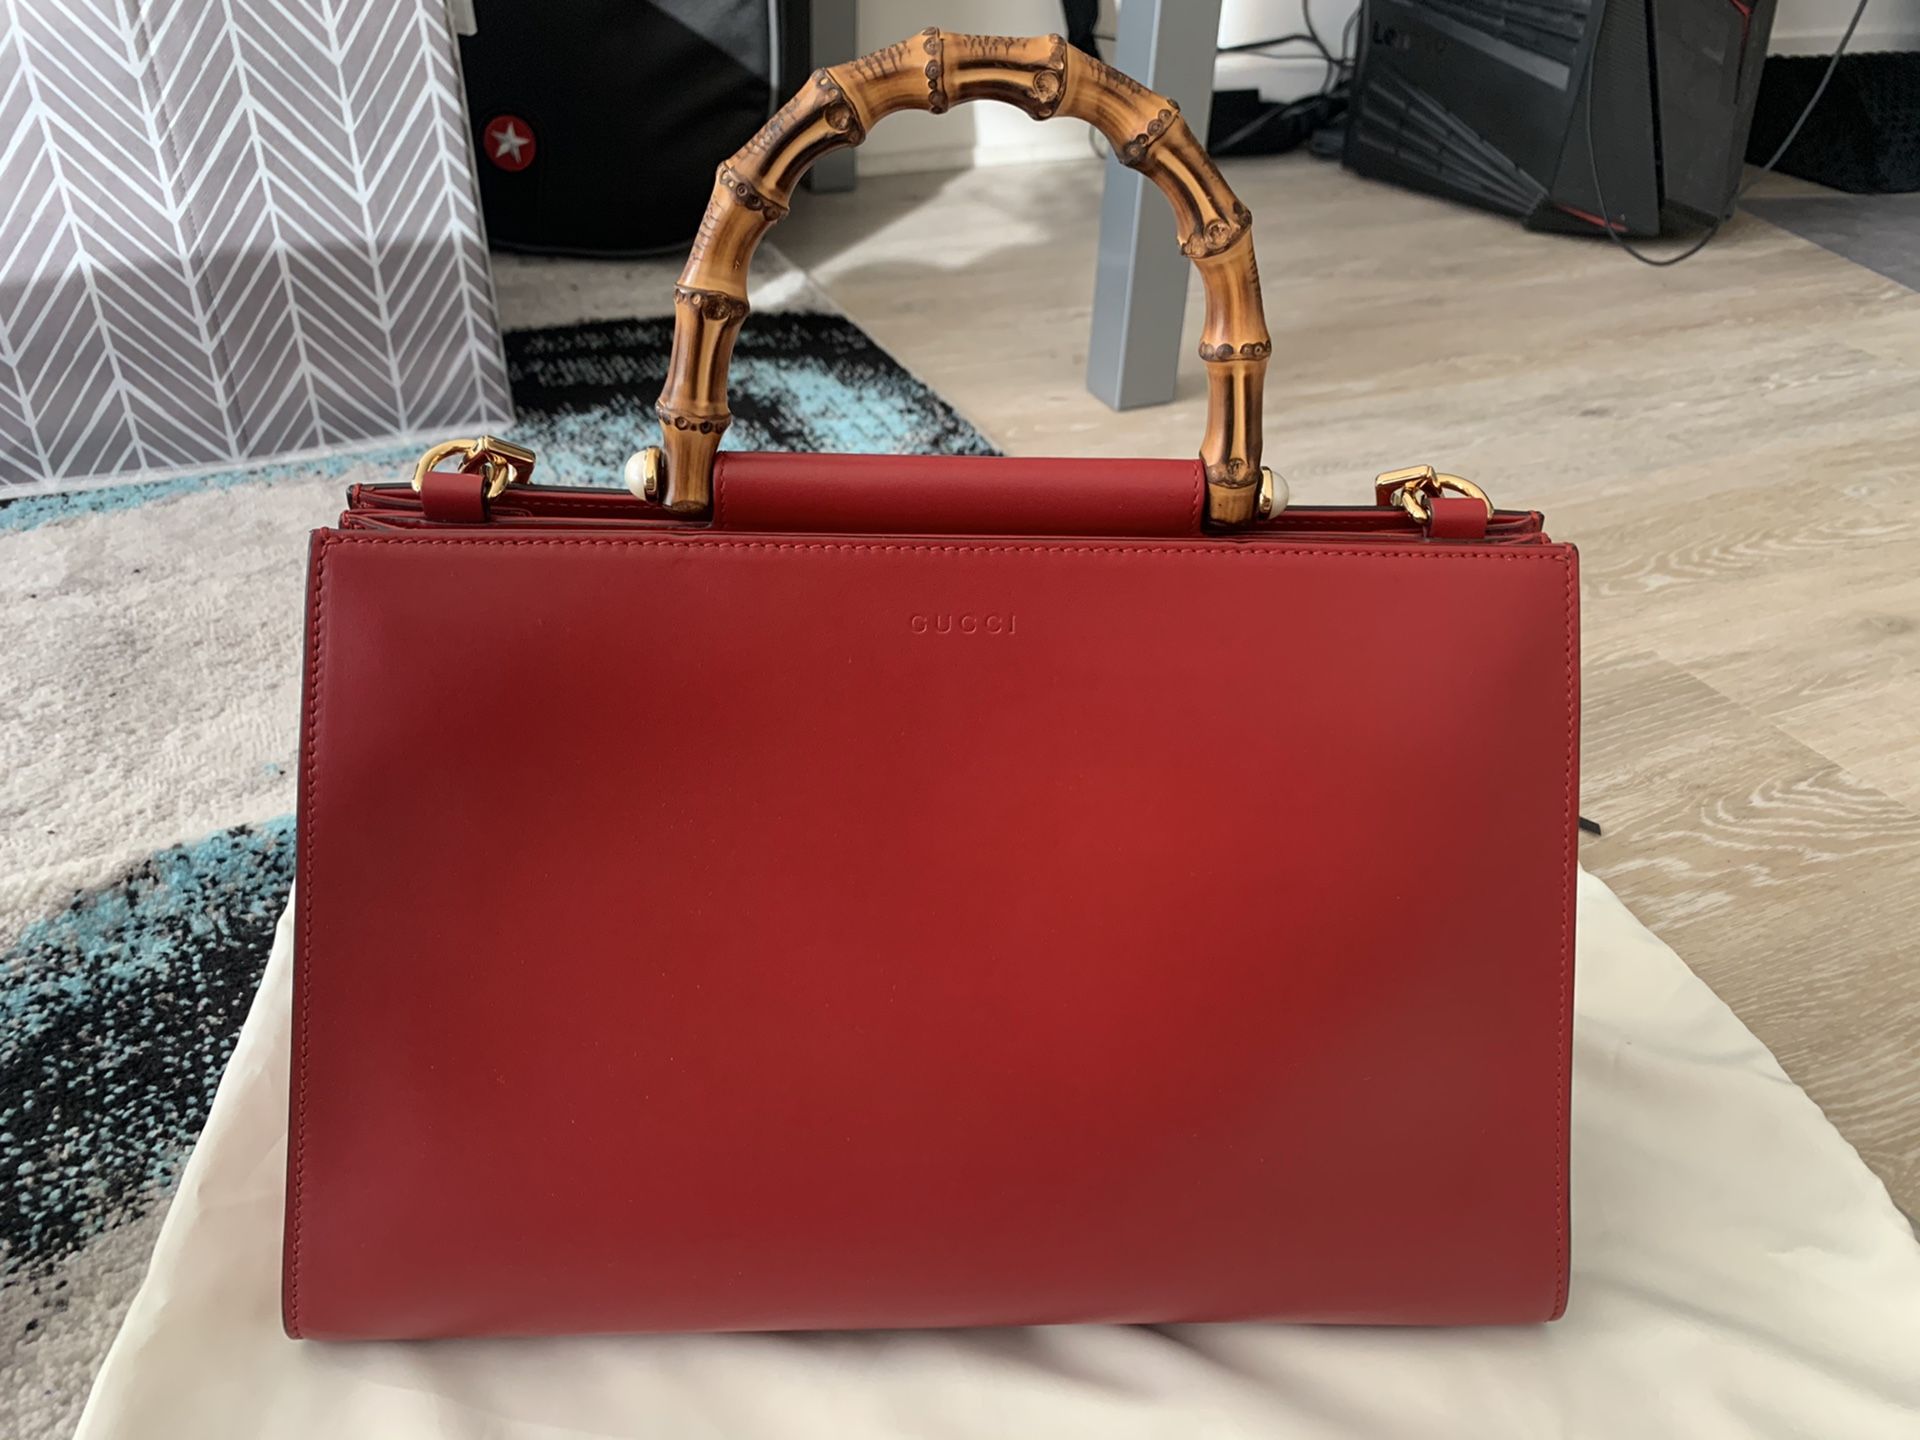 Gucci Handbag New Gucci Red Leather Nymphaea Medium Shoulder Bag